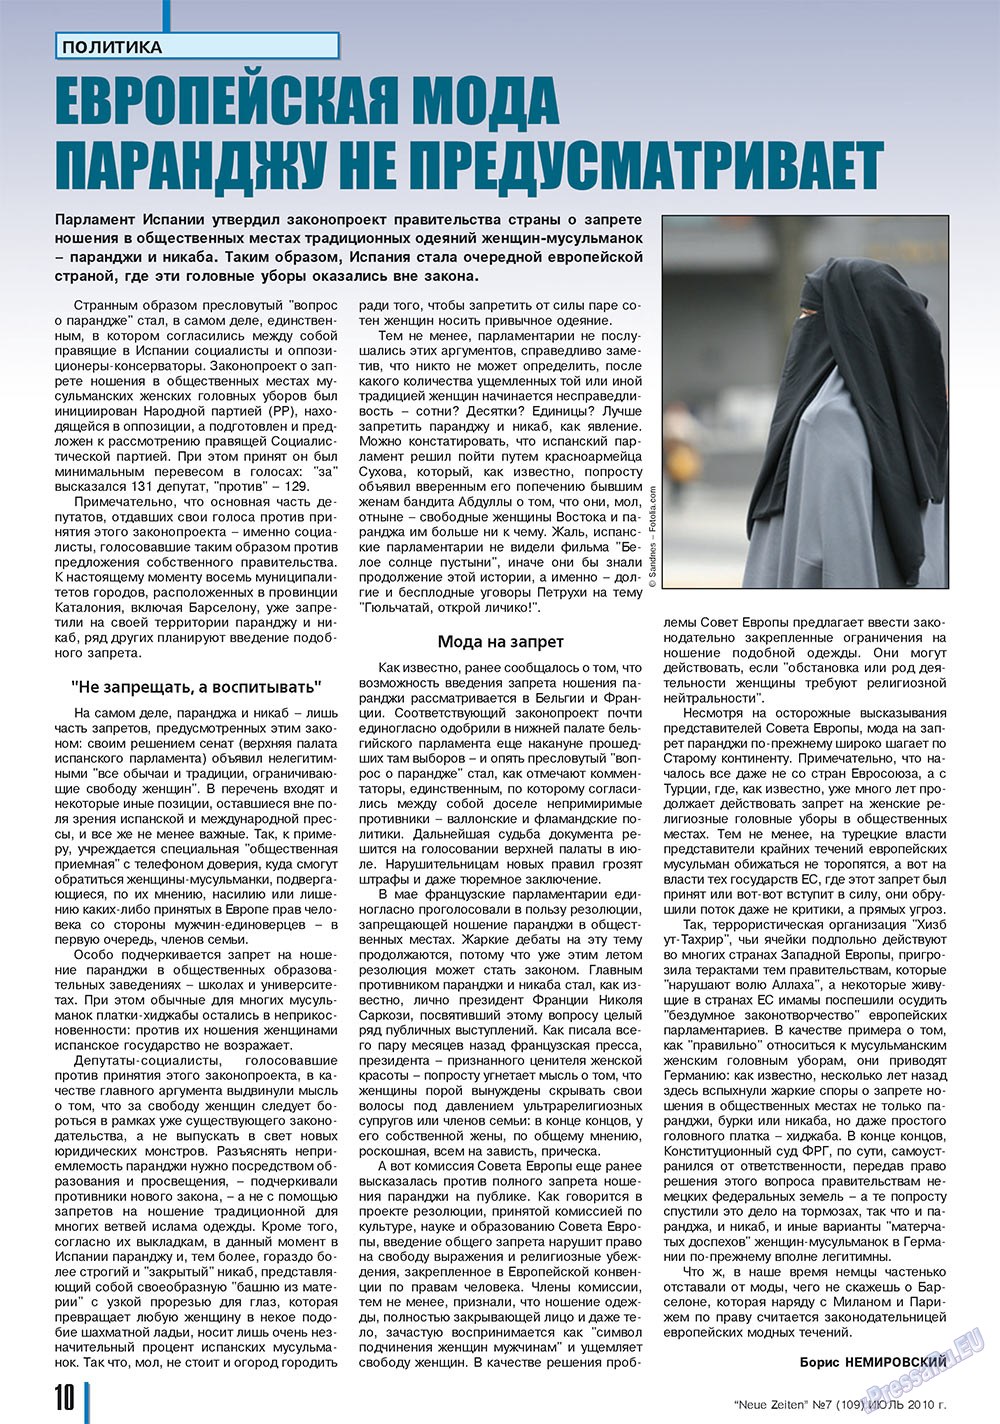 Neue Zeiten, журнал. 2010 №7 стр.10